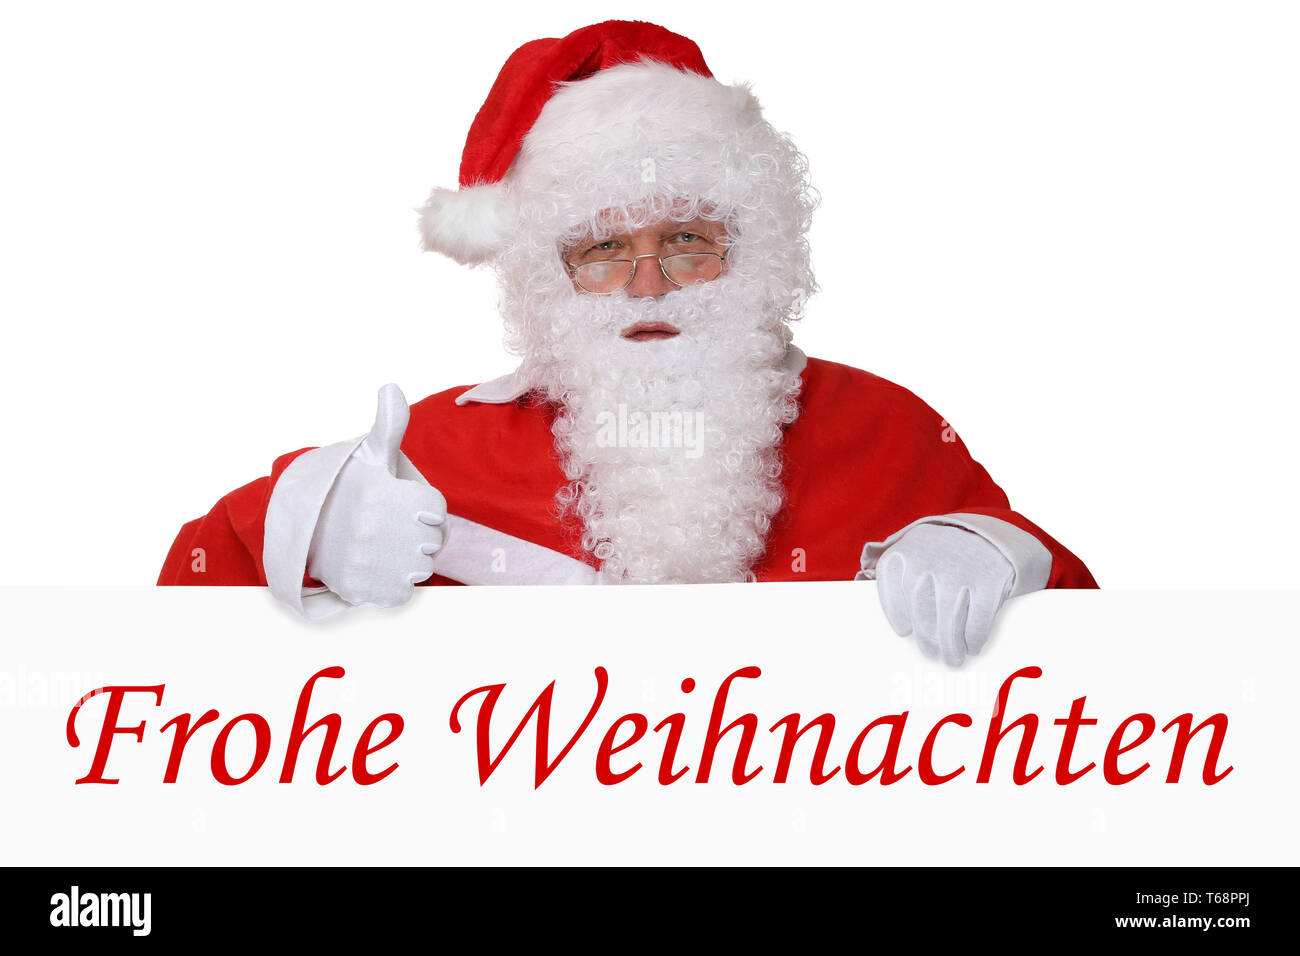 Weihnachtsmann Nikolaus zeigt Frohe Weihnachten Weihnachtskarte Daumen hoch Stock Photo